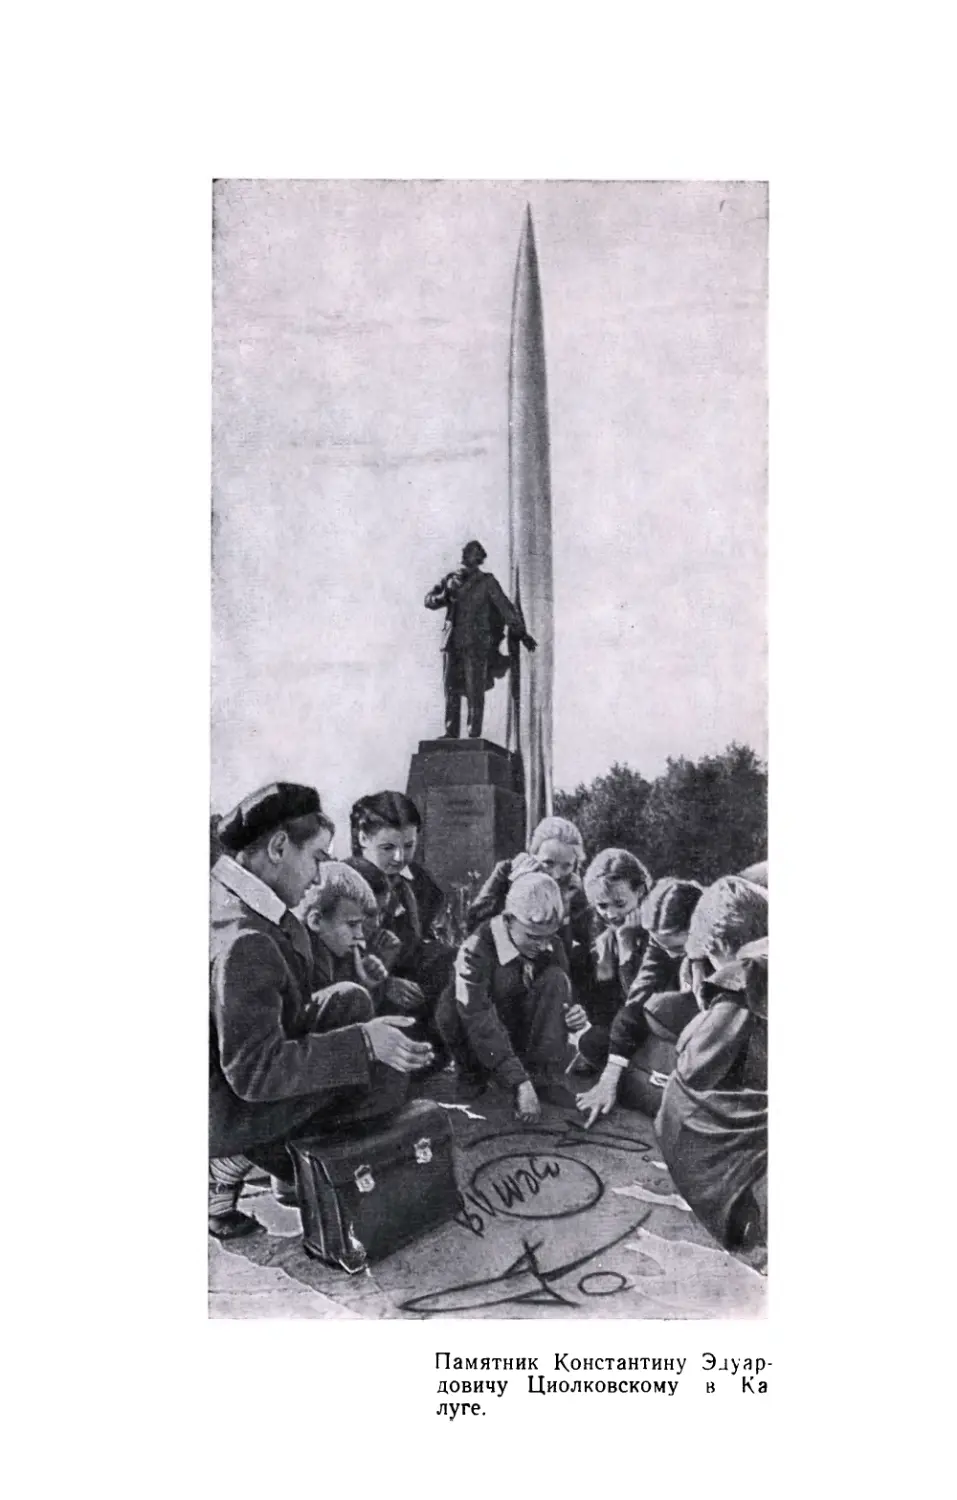 Вклейка. Памятник Константину Эдуардовичу Циолковскому в Калуге